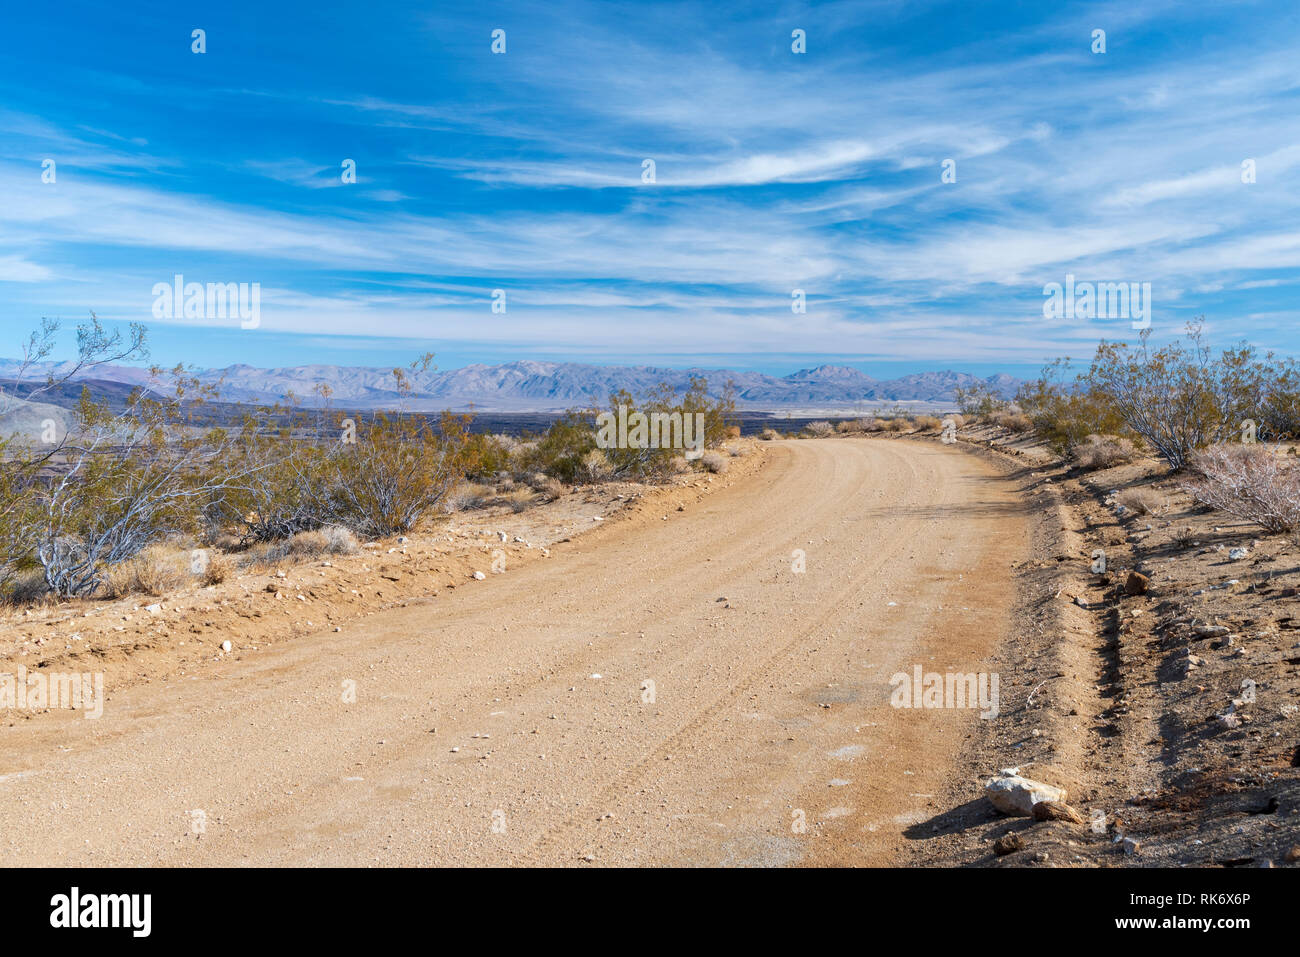 Deserto di strada sterrata che conduce verso le montagne al di là sotto il luminoso cielo blu con nuvole bianche. Foto Stock